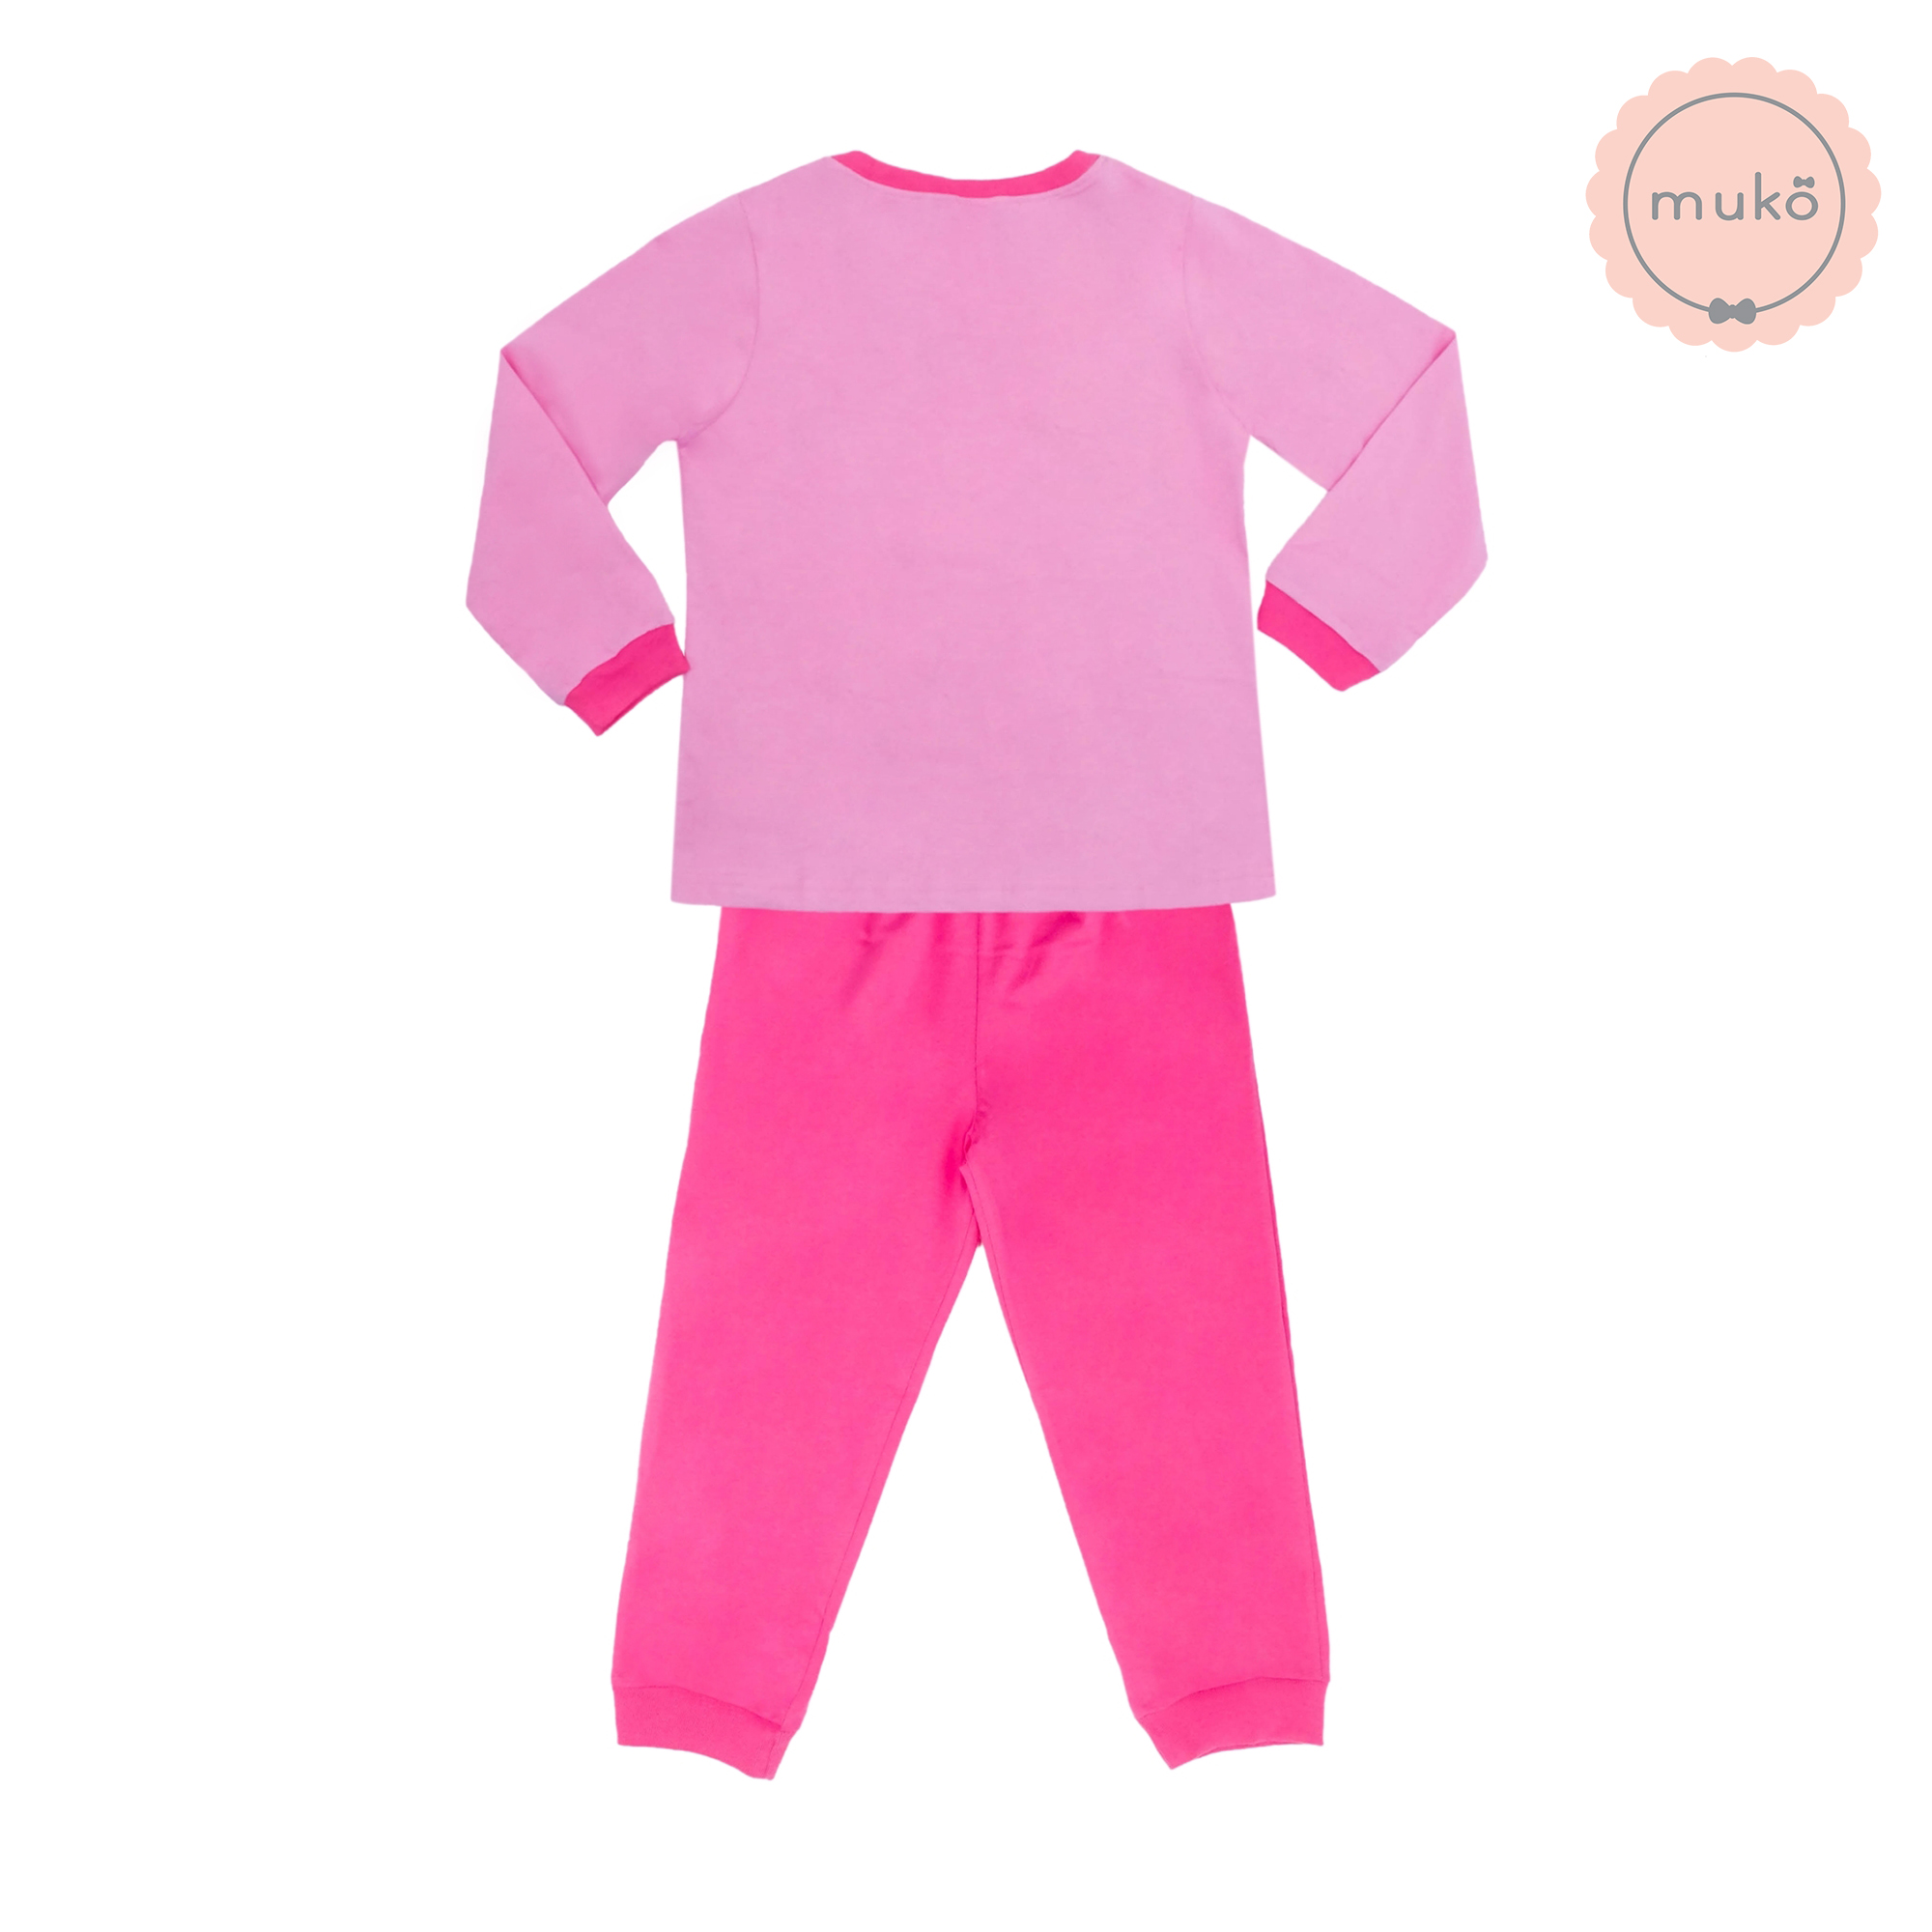 ชุดเด็ก 5-6 ขวบ แขนยาว-ขายาว (Size M) DPC127-03-XL-Pink M ลาย เจ้าหญิงเบลล์ Belle (เสื้อชมพูกางเกงชมพูเข้ม)